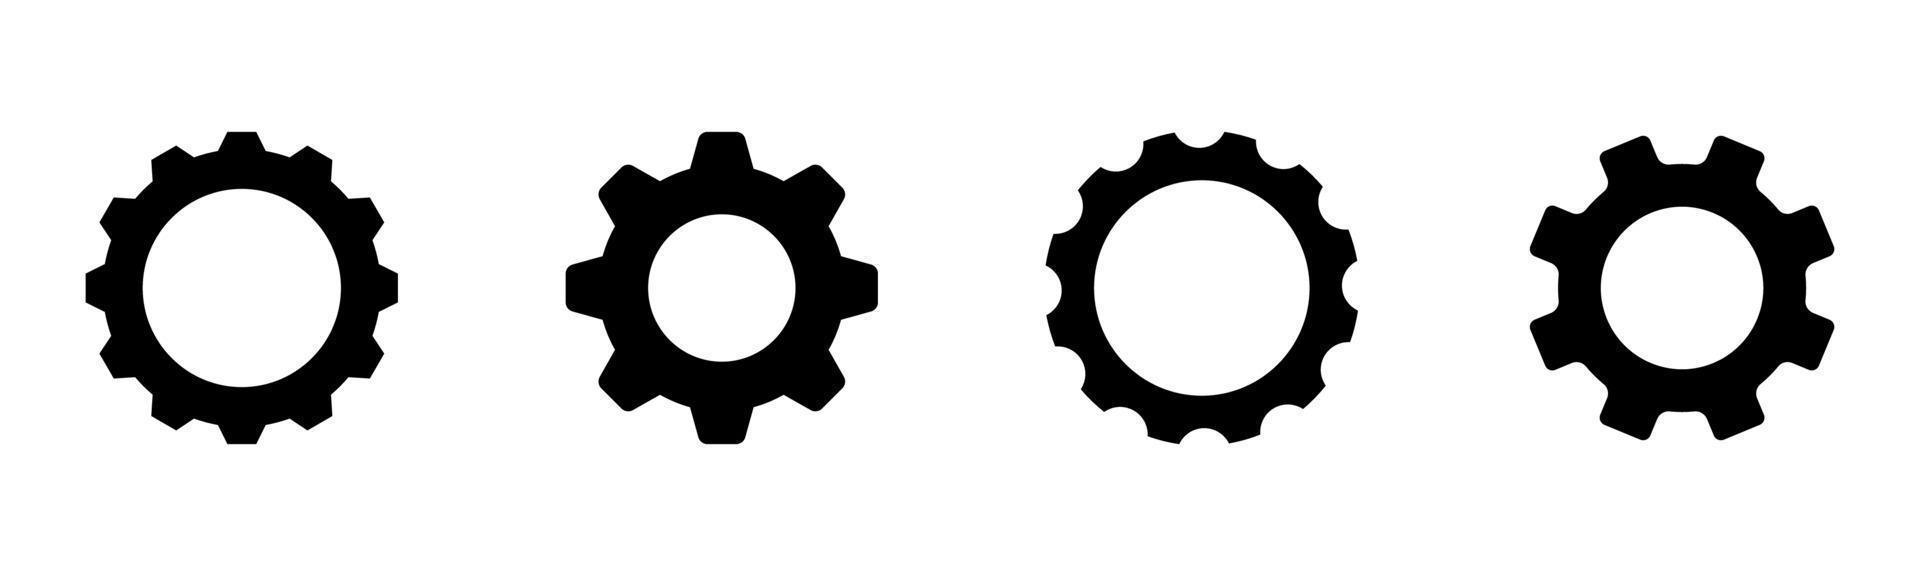 jeu d'icônes de roue dentée d'engrenage de 4, élément de conception adapté aux sites Web, à la conception d'impression ou à l'application vecteur